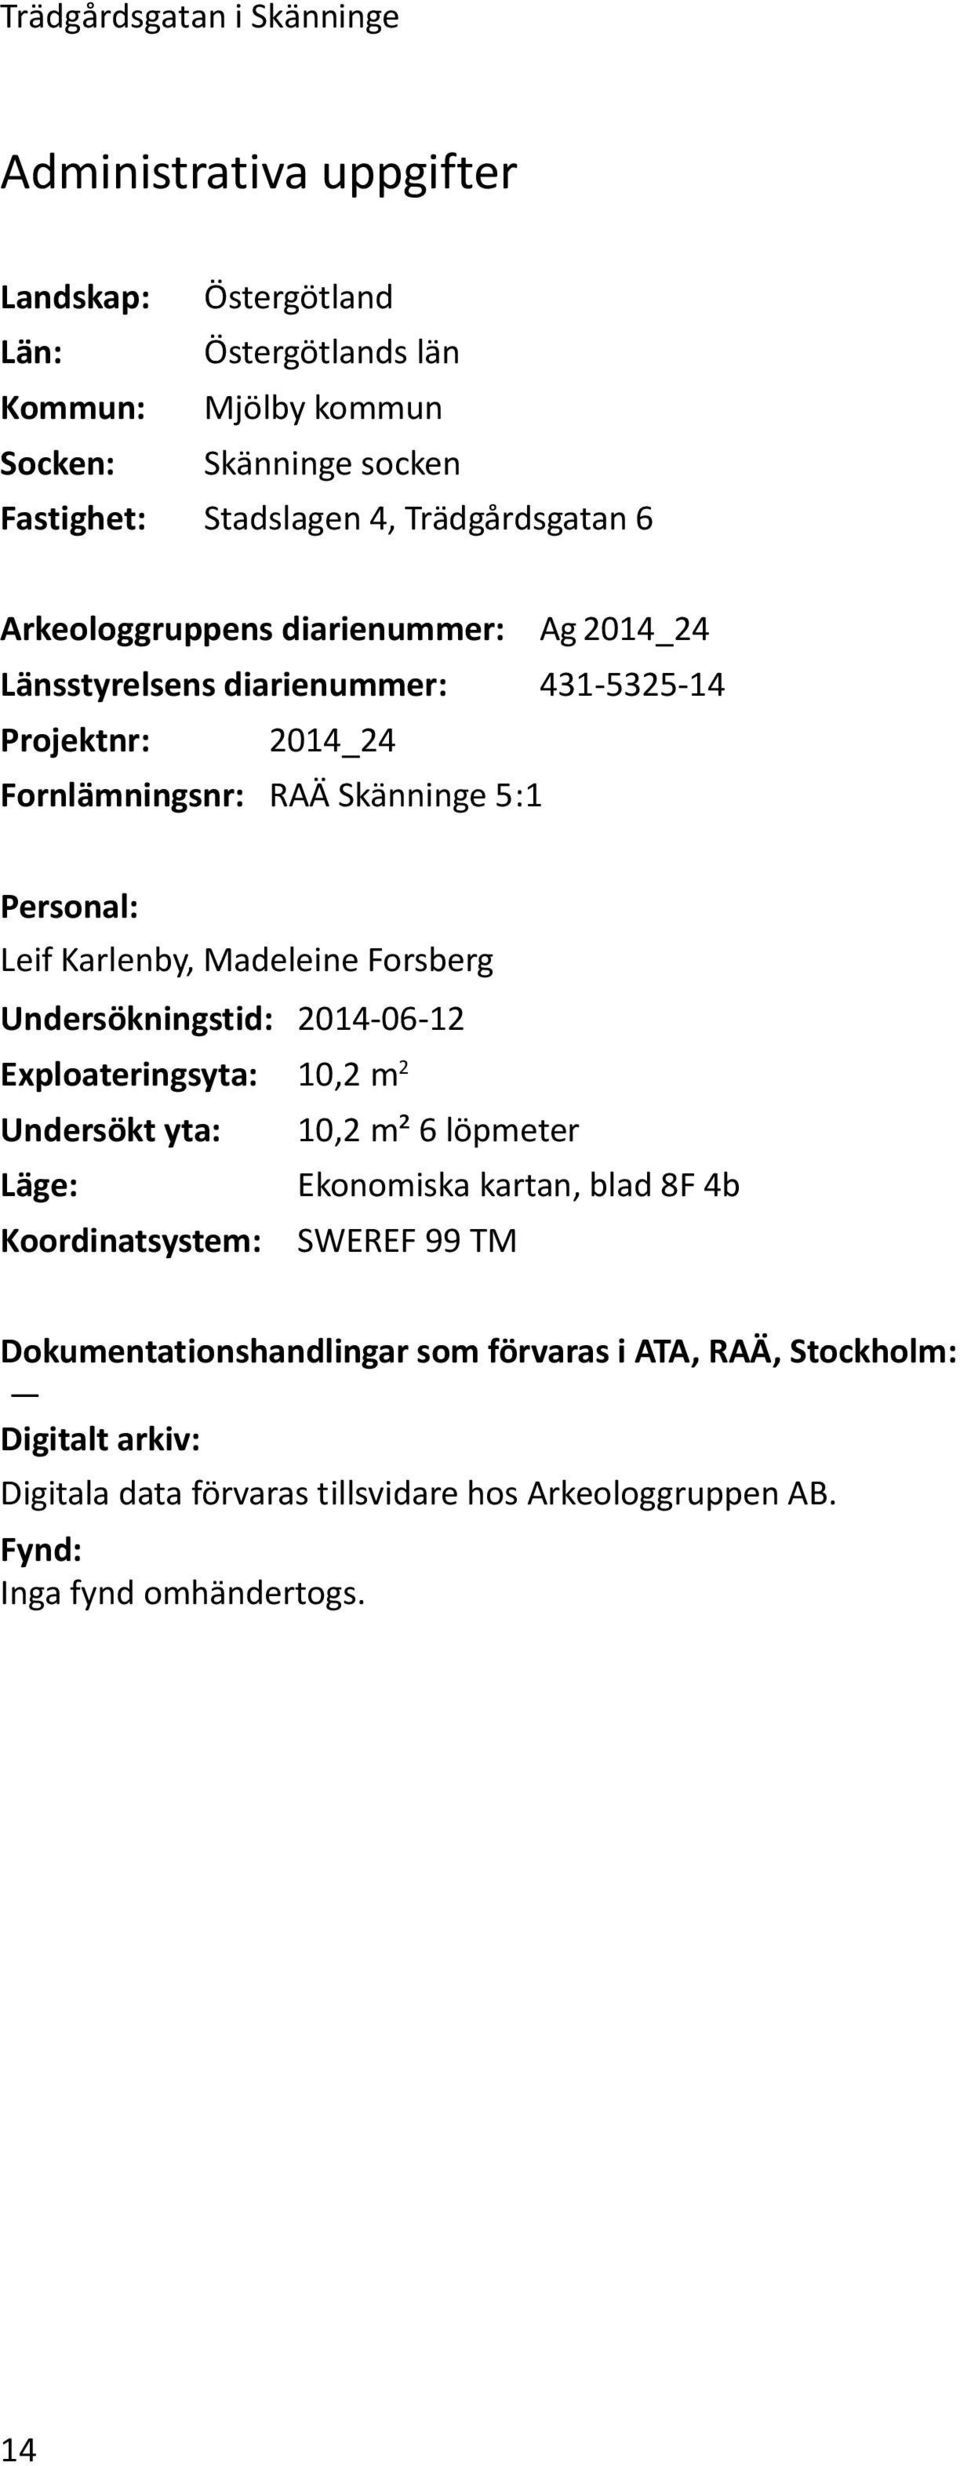 Karlenby, Madeleine Forsberg Undersökningstid: 2014-06-12 Exploateringsyta: 10,2 m 2 Undersökt yta: 10,2 m² 6 löpmeter Läge: Ekonomiska kartan, blad 8F 4b Koordinatsystem: